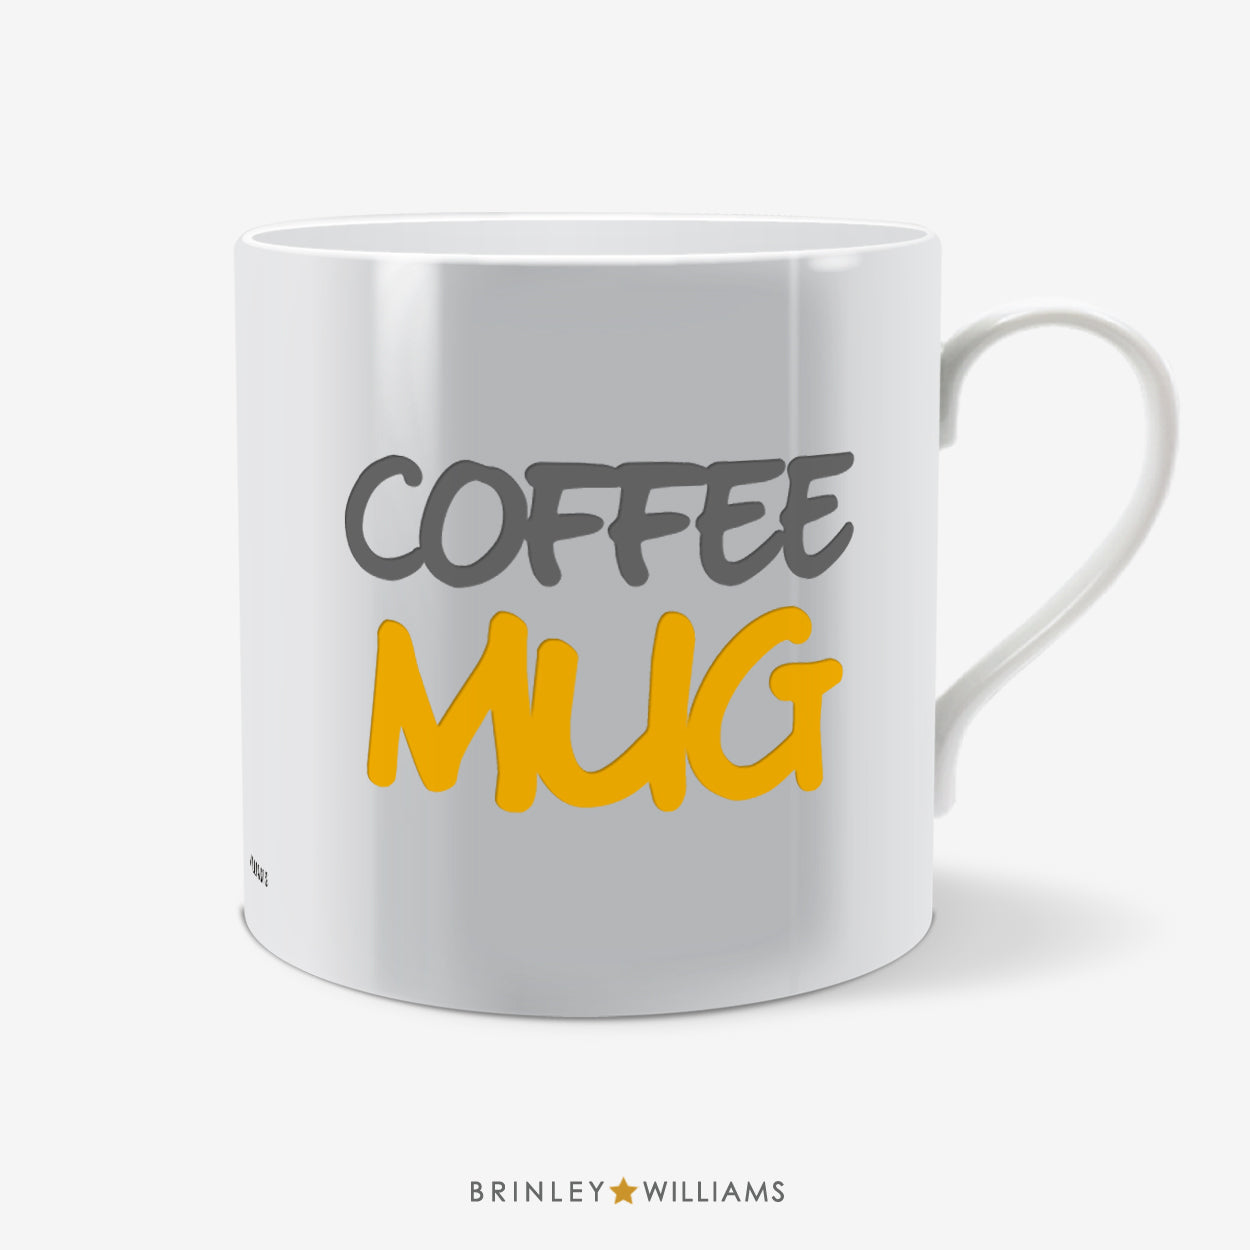 Coffee Mug Fun Mug - Yellow